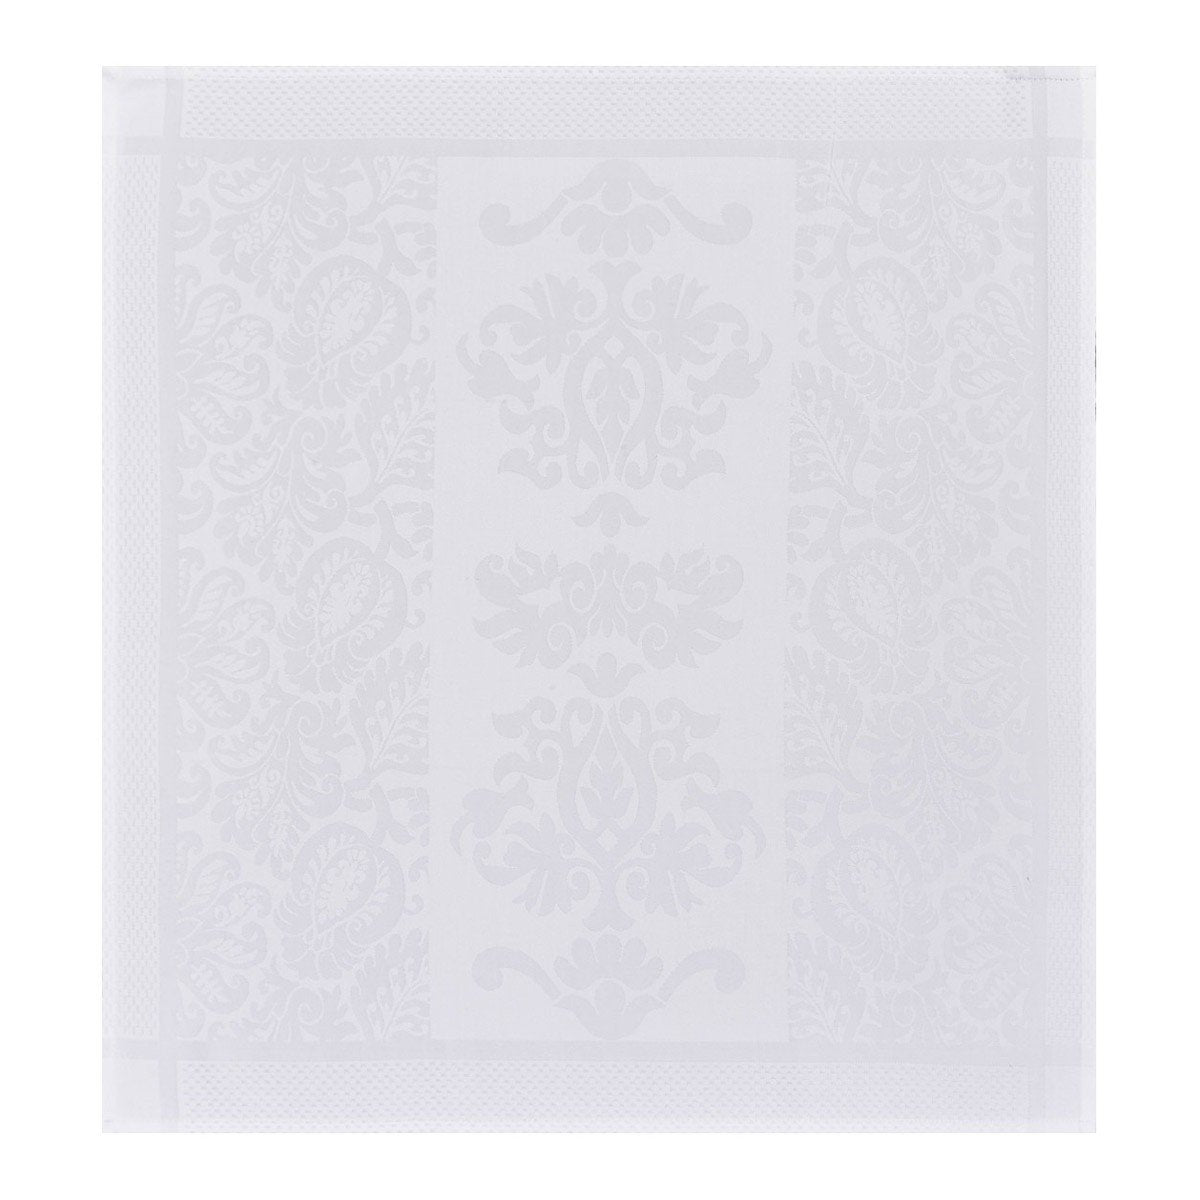 Le Jacquard Français Table Linen Siena Blanc Fig Linens White napkin